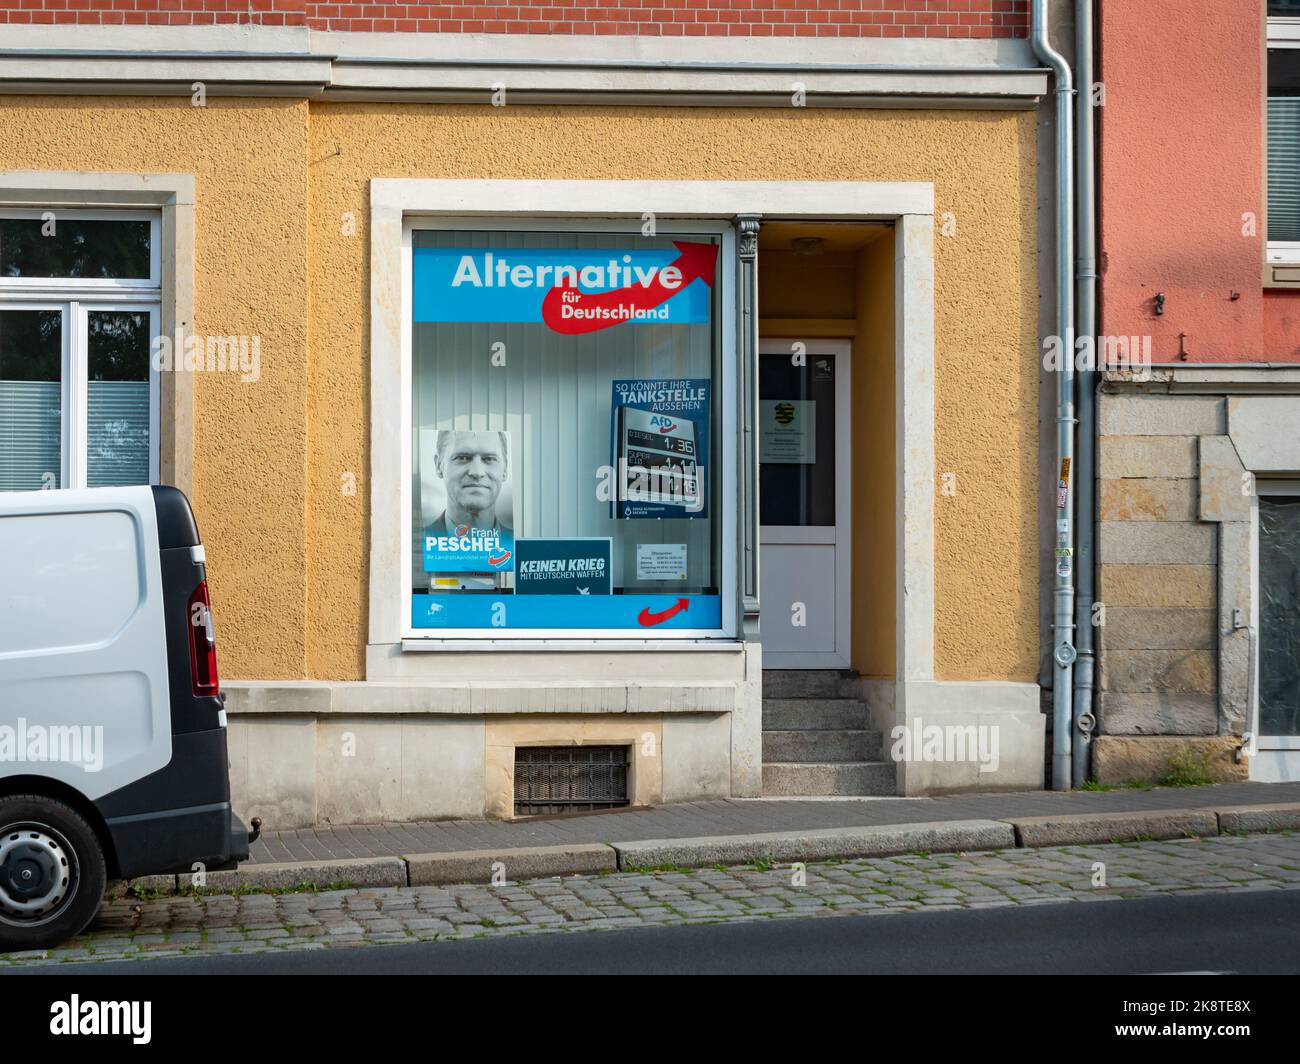 Ufficio festa della AFD in città. Servizio del partito politico conservatore alternative für Deutschland (alternativa per la Germania). Foto Stock